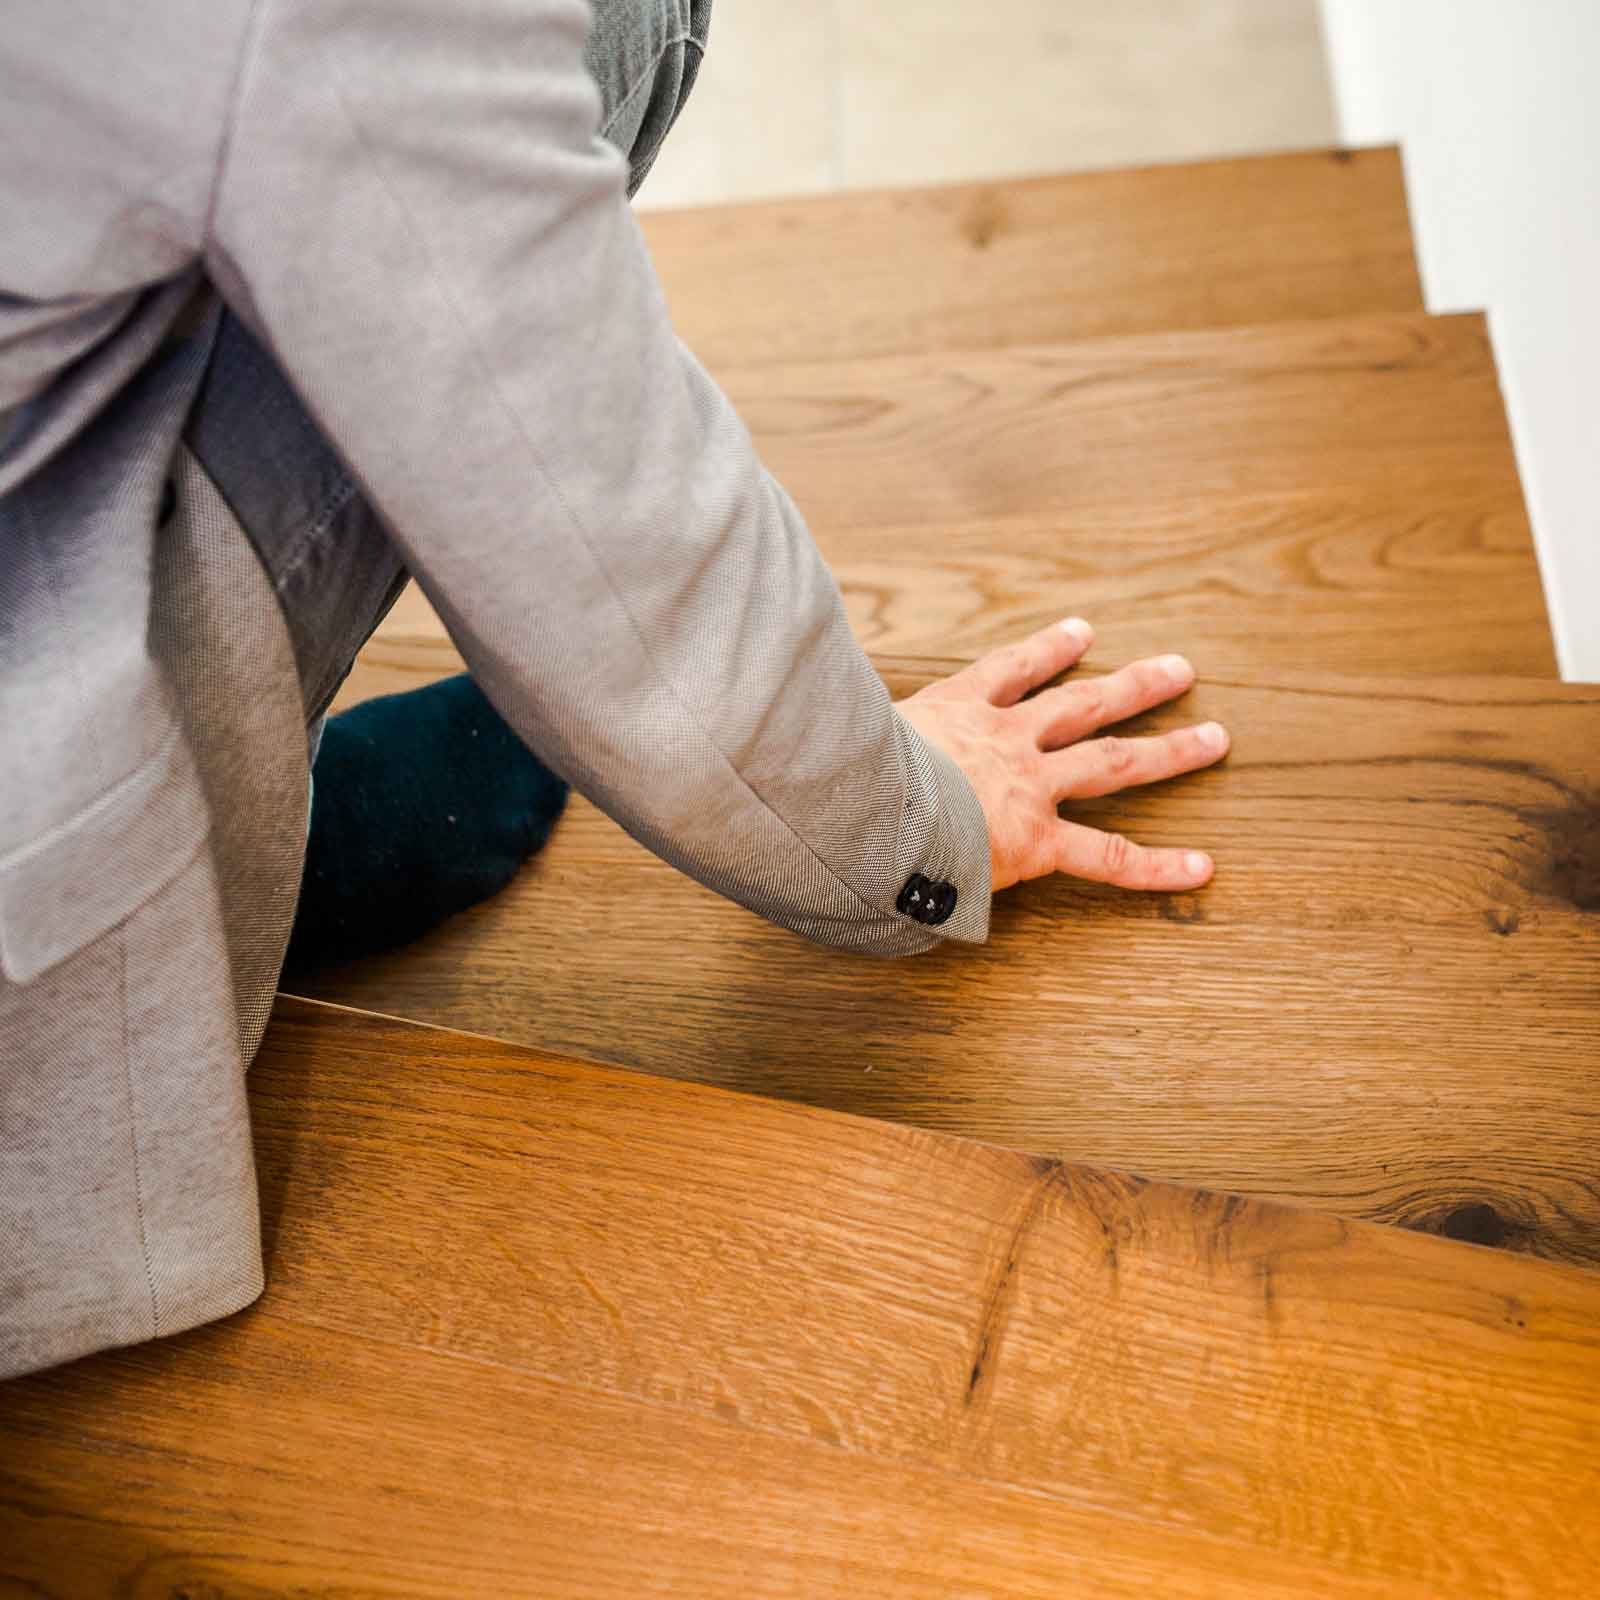 Bild zeigt Detailfoto von Christian auf Holztreppe sitzend und mit der Hand über den Boden streichend.